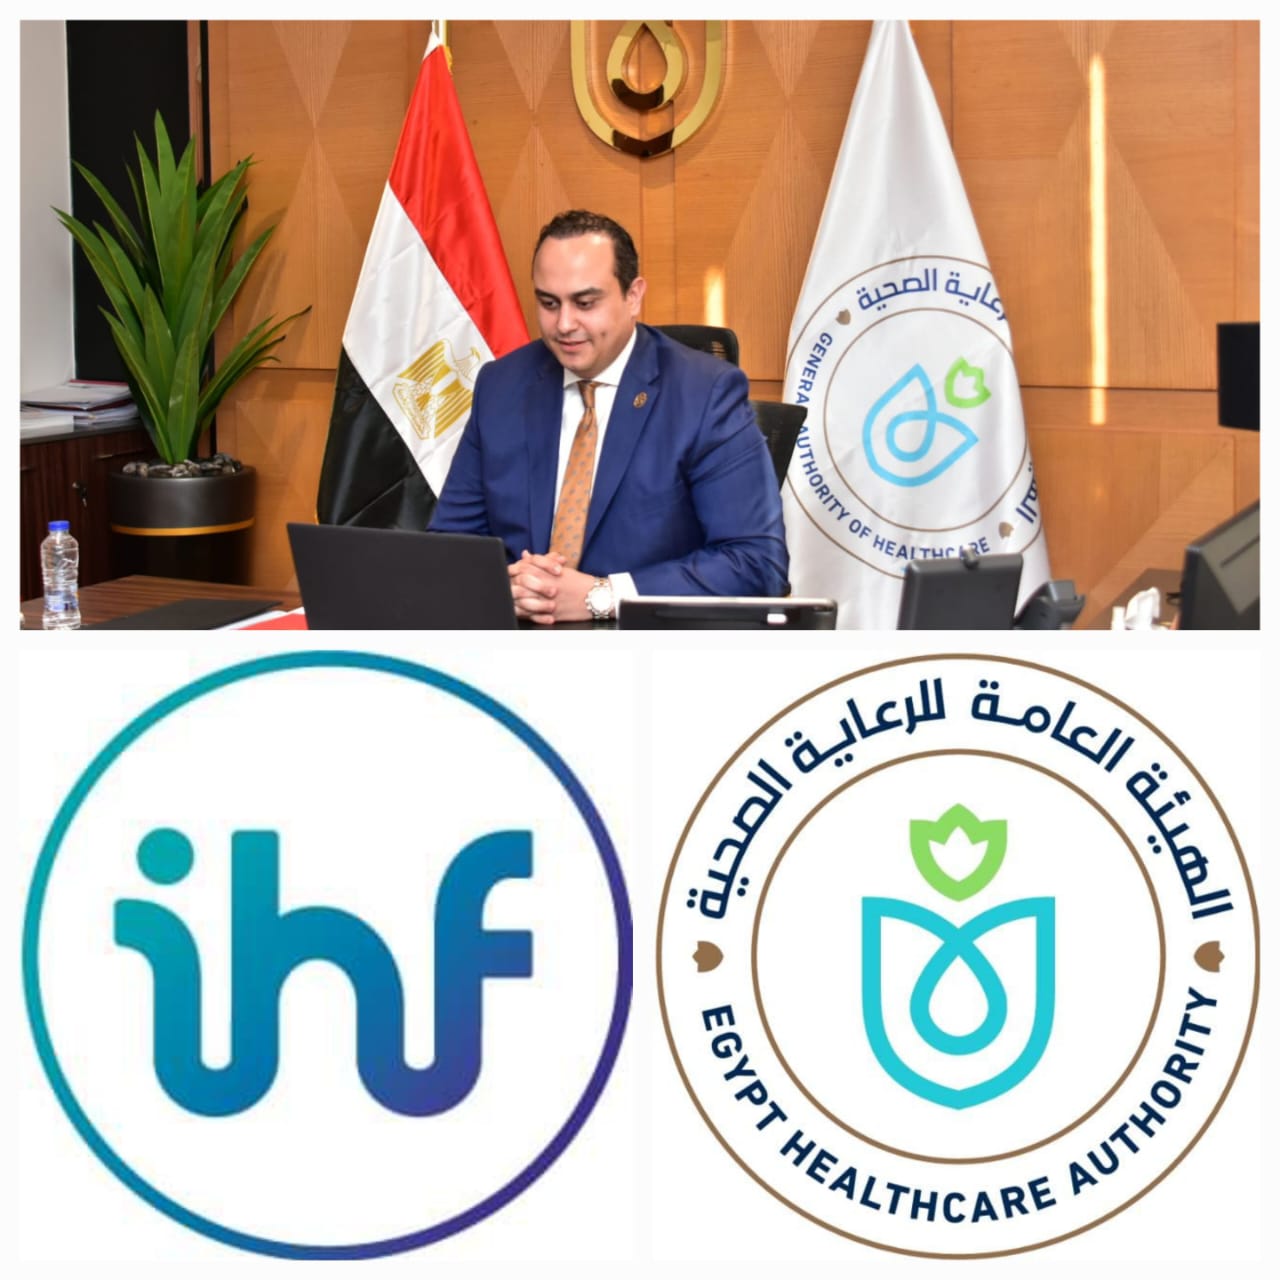 رئيس هيئة الرعاية الصحية: نتطلع لاستضافة المنتدى العالمي للمستشفيات التاسع والأربعين بشرم الشيخ عام 2026 